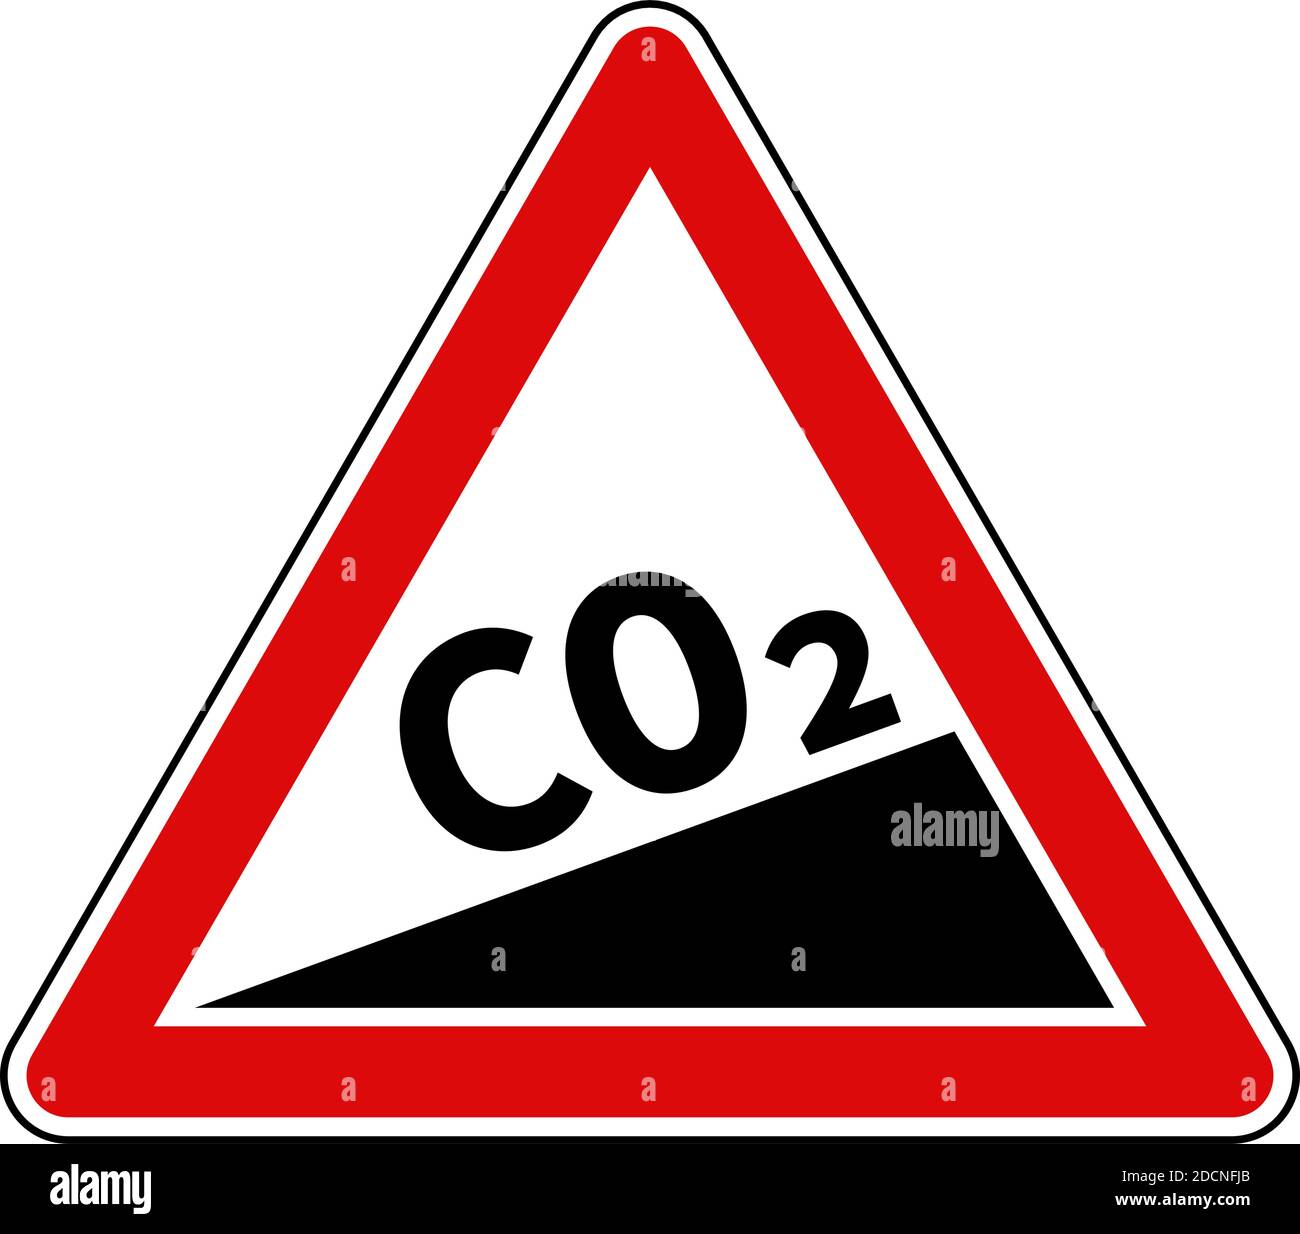 Illustration du vecteur de forme triangulaire rouge du signe d'augmentation de l'émission de CO2 Illustration de Vecteur